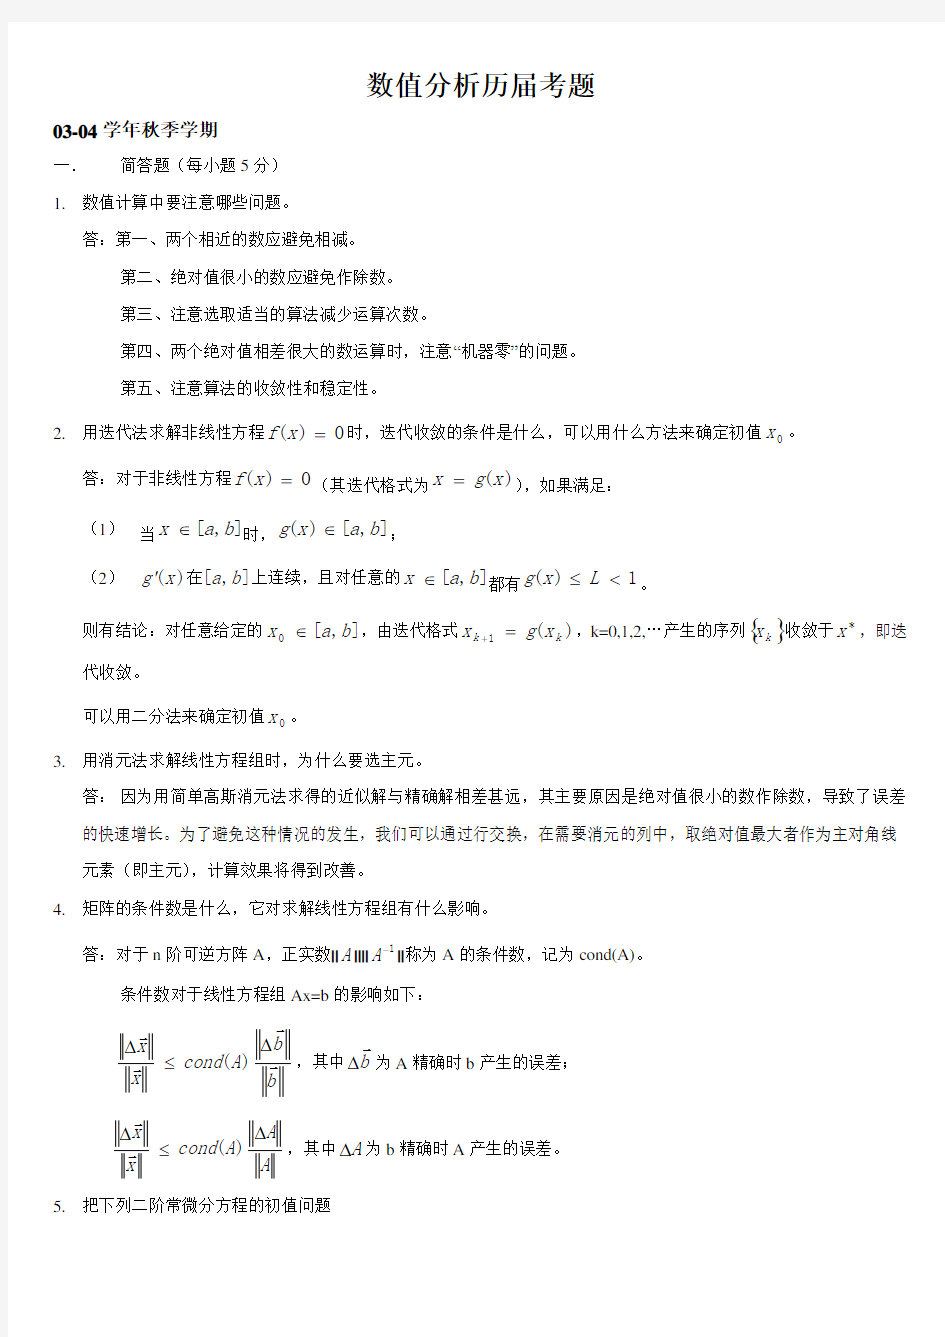 上海大学数值分析历届考题